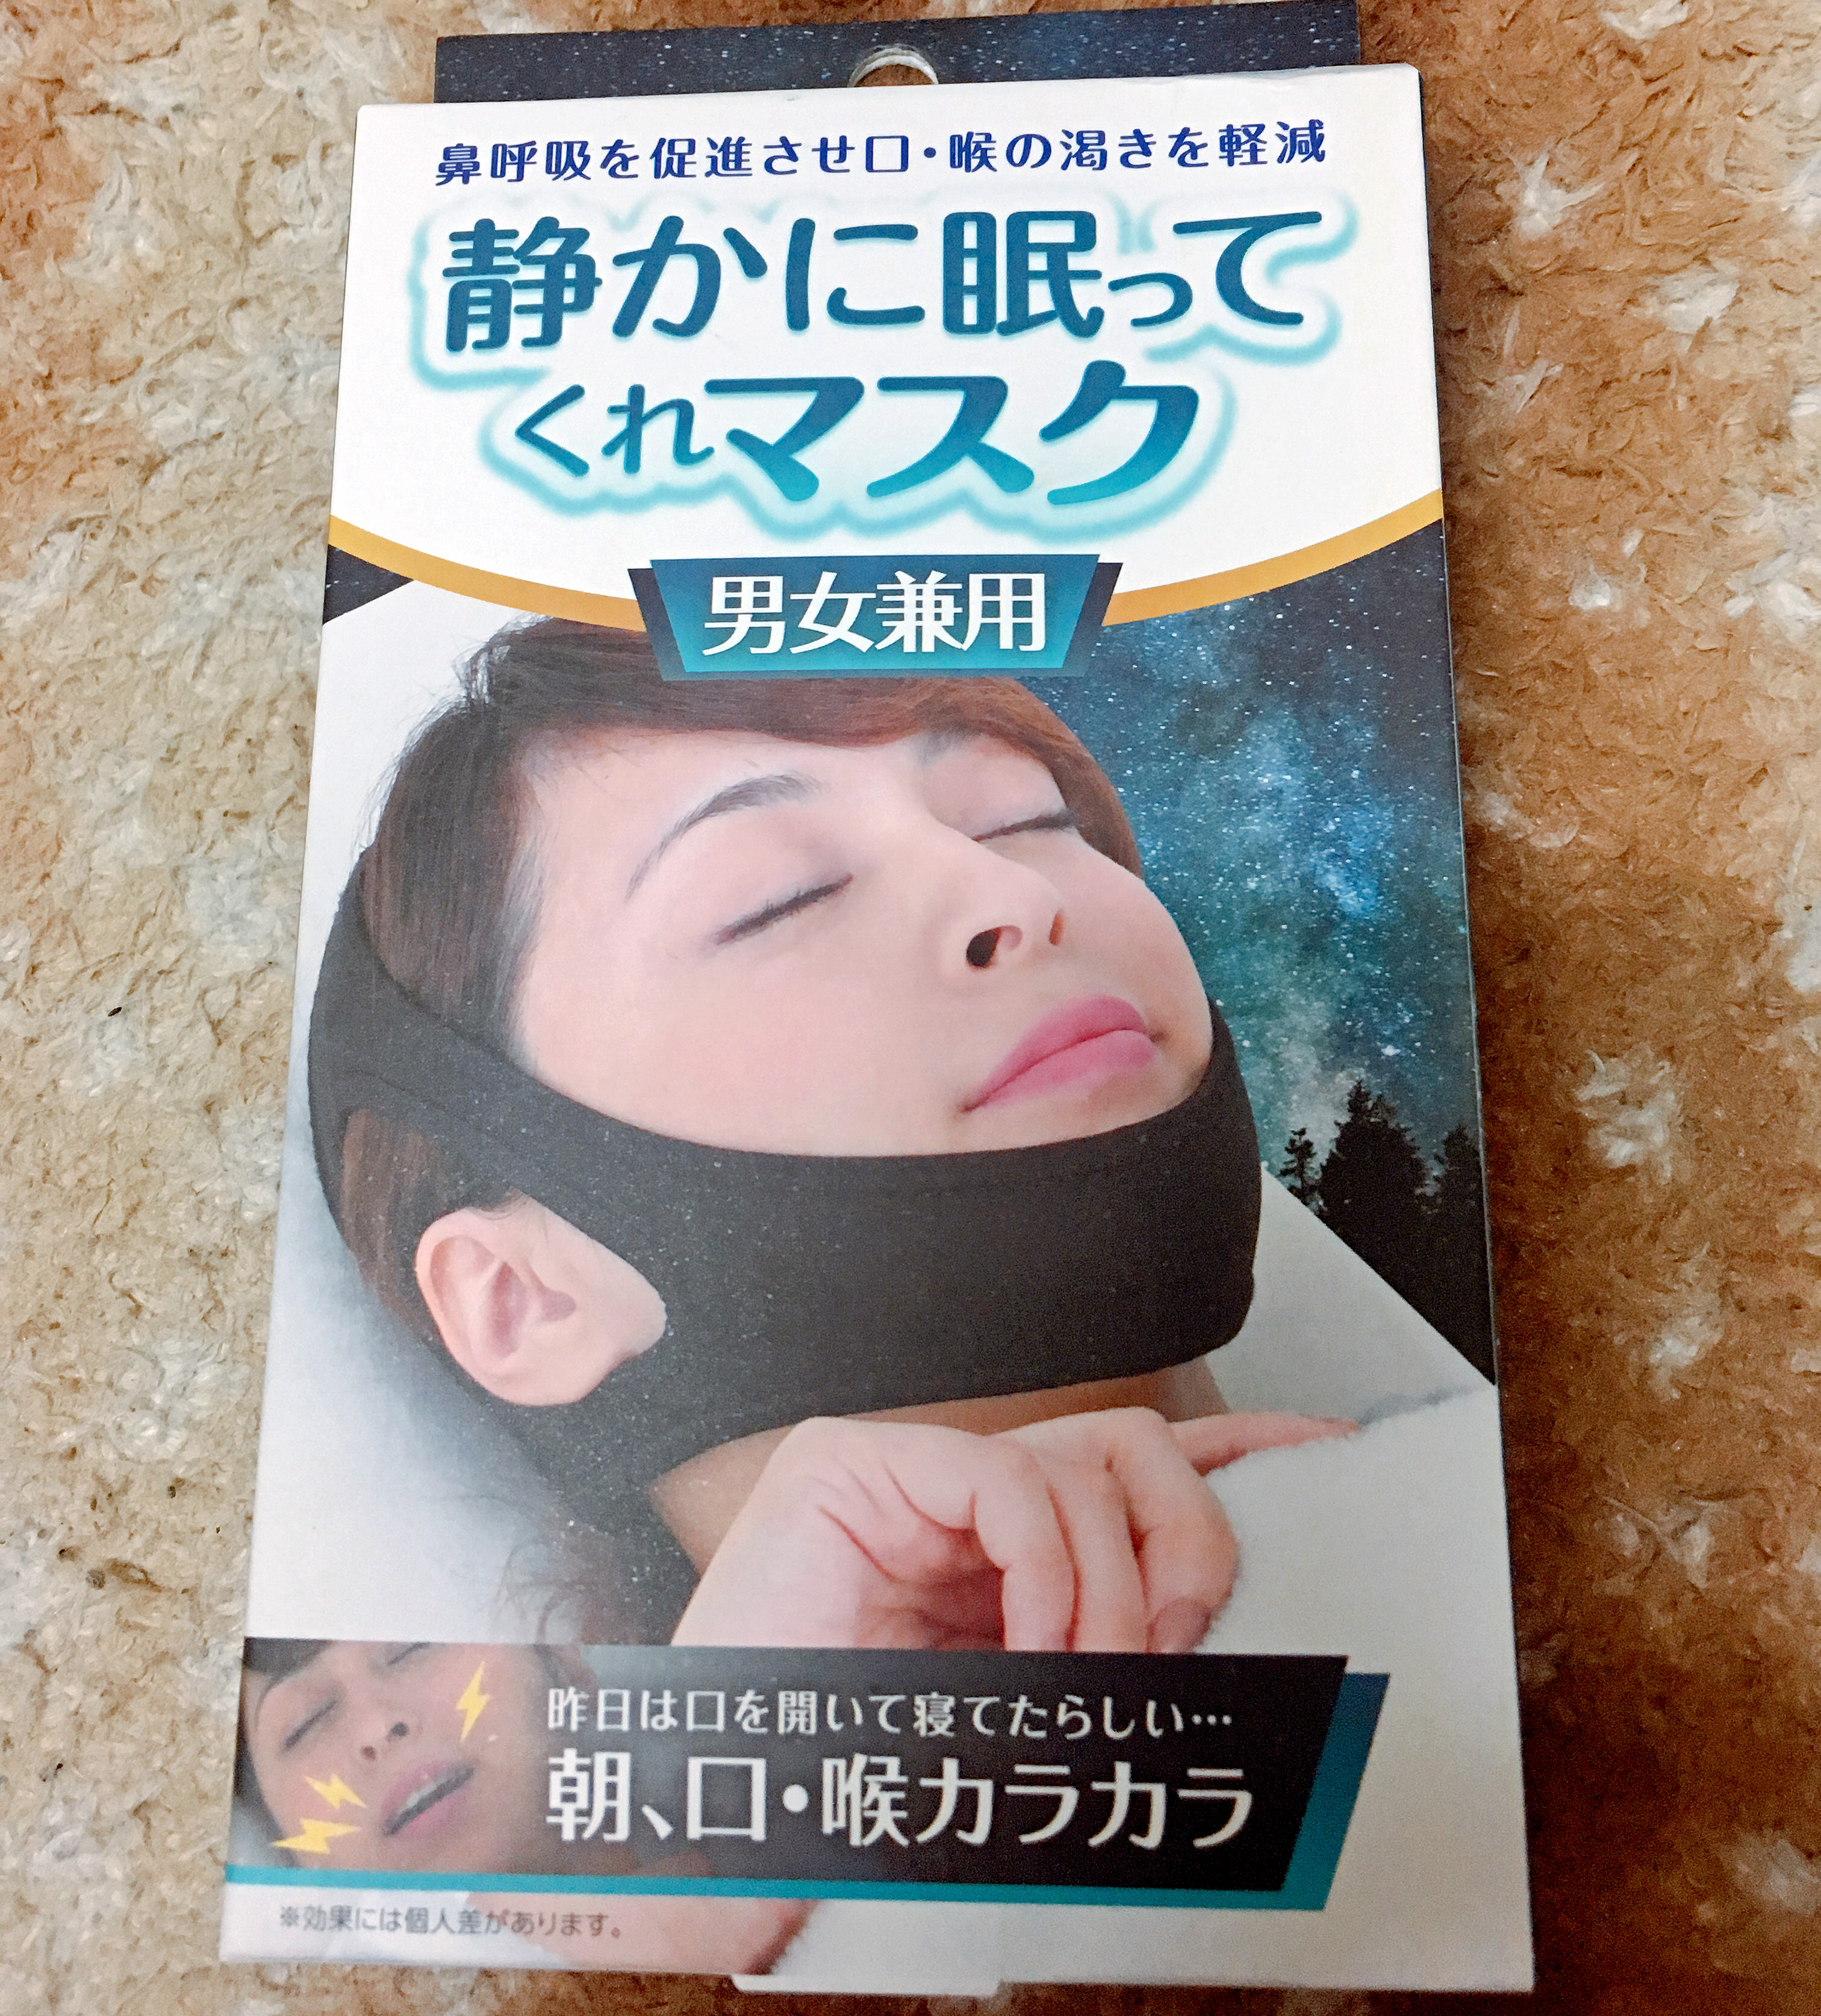 マスク いびき 防止